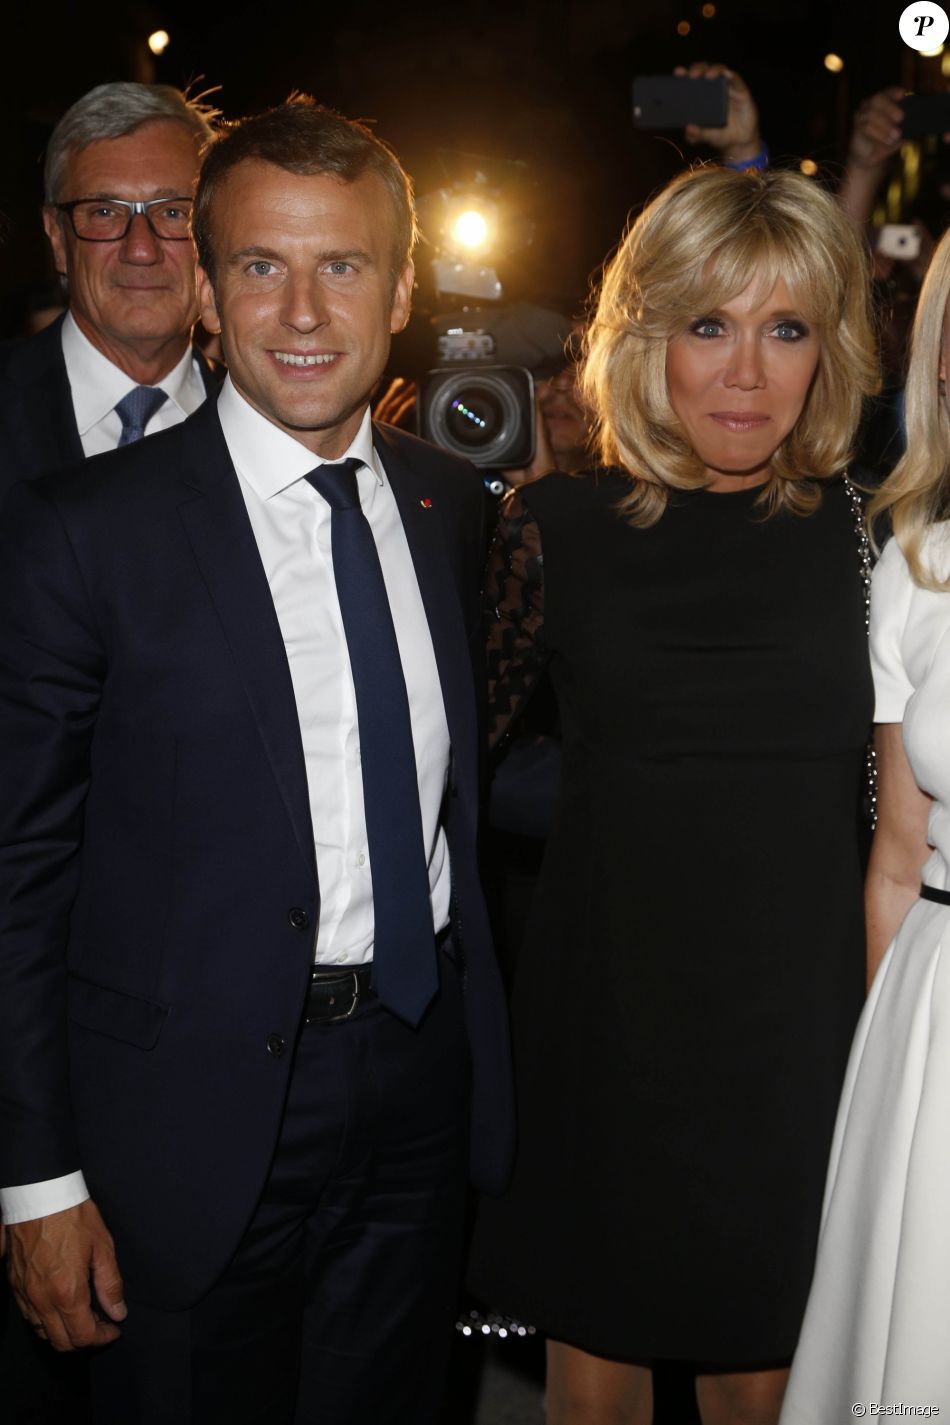 Le président de la République française Emmanuel Macron et sa femme la Première dame Brigitte Macron (Trogneux) lors du festival de Salzbourg, Autriche, le 23 août 2017.